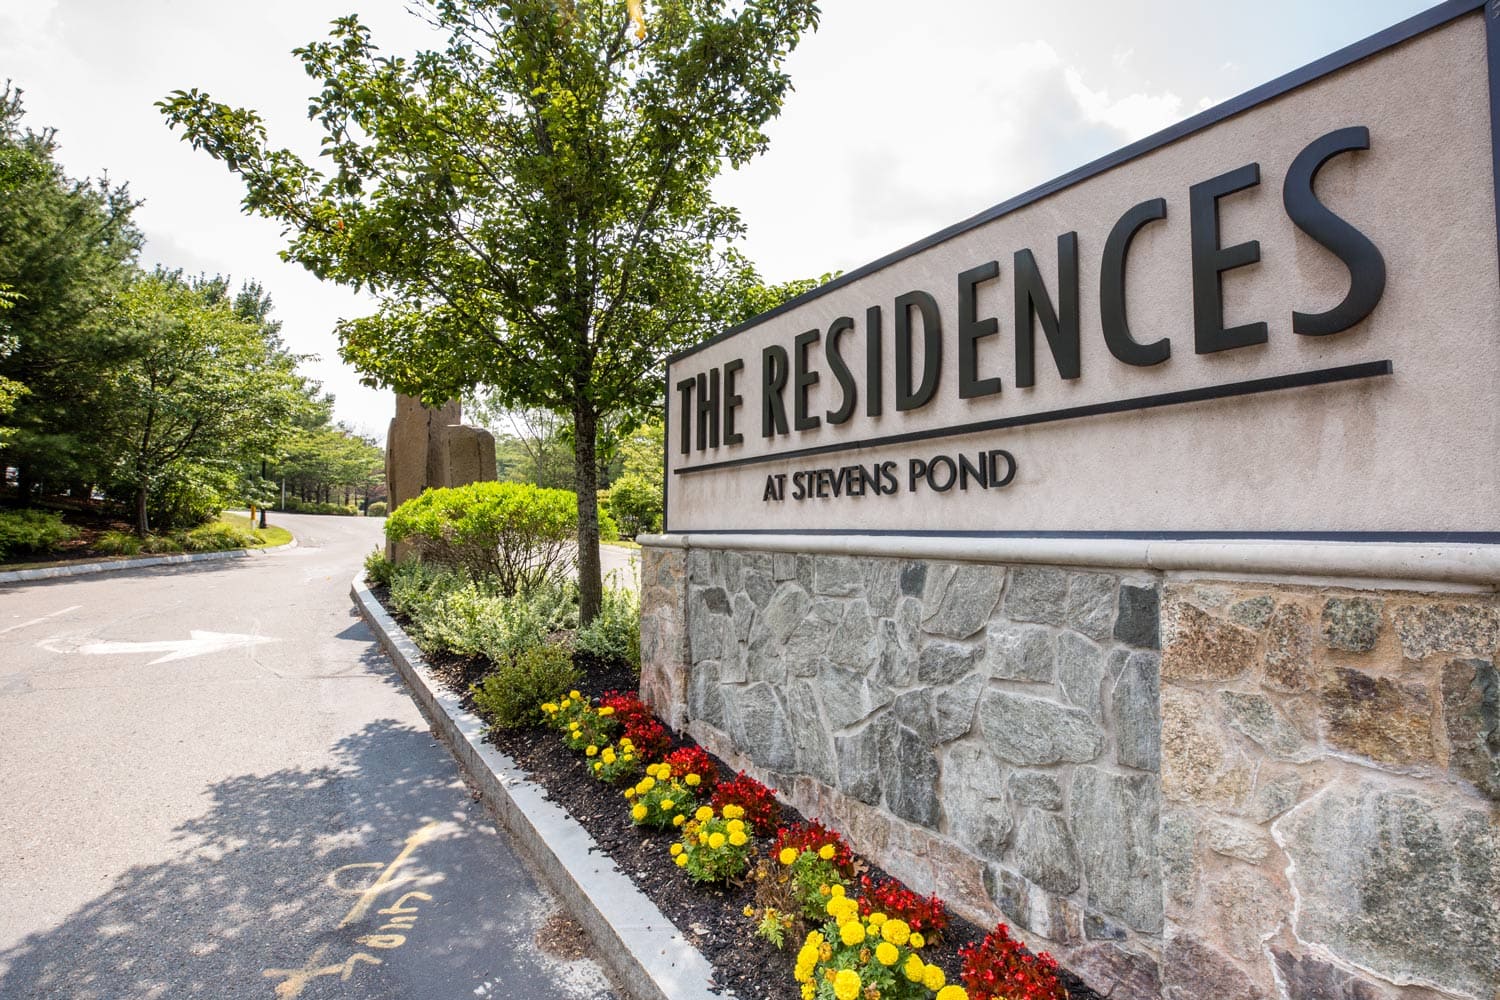 Residences at Stevens Pond signage